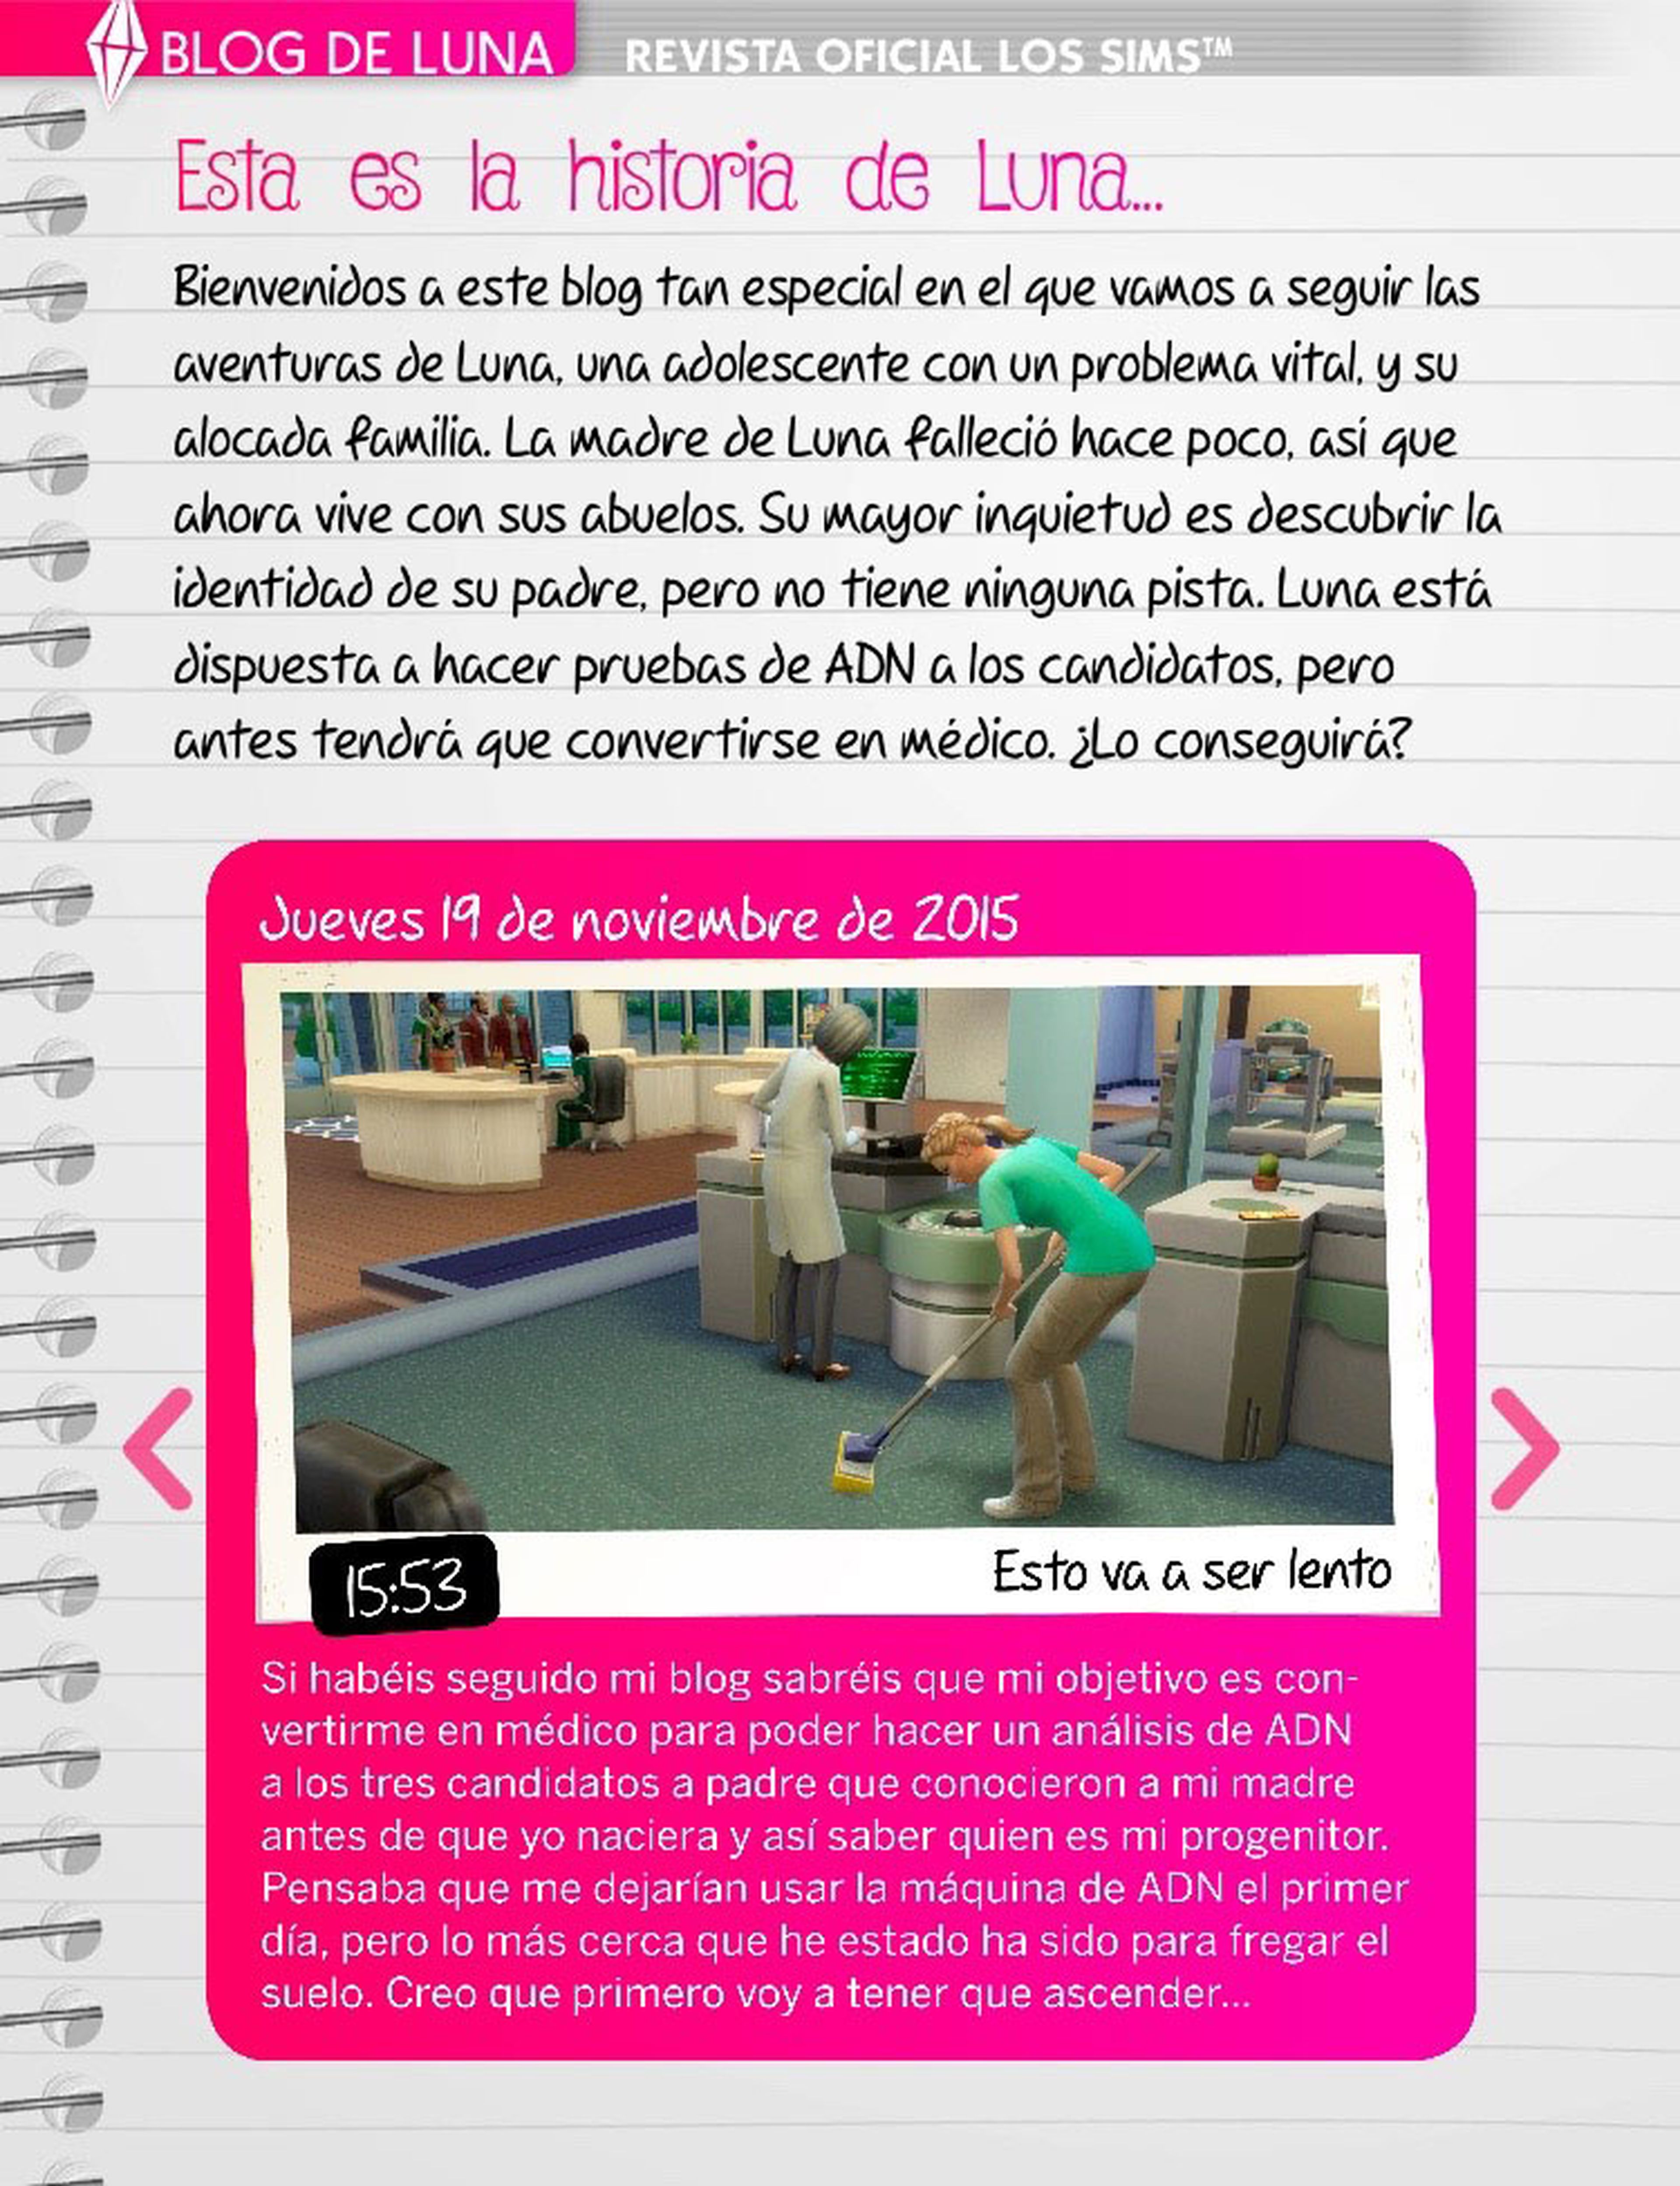 ¡Ya puedes descargar gratis el número 20 de La Revista Oficial de Los Sims!